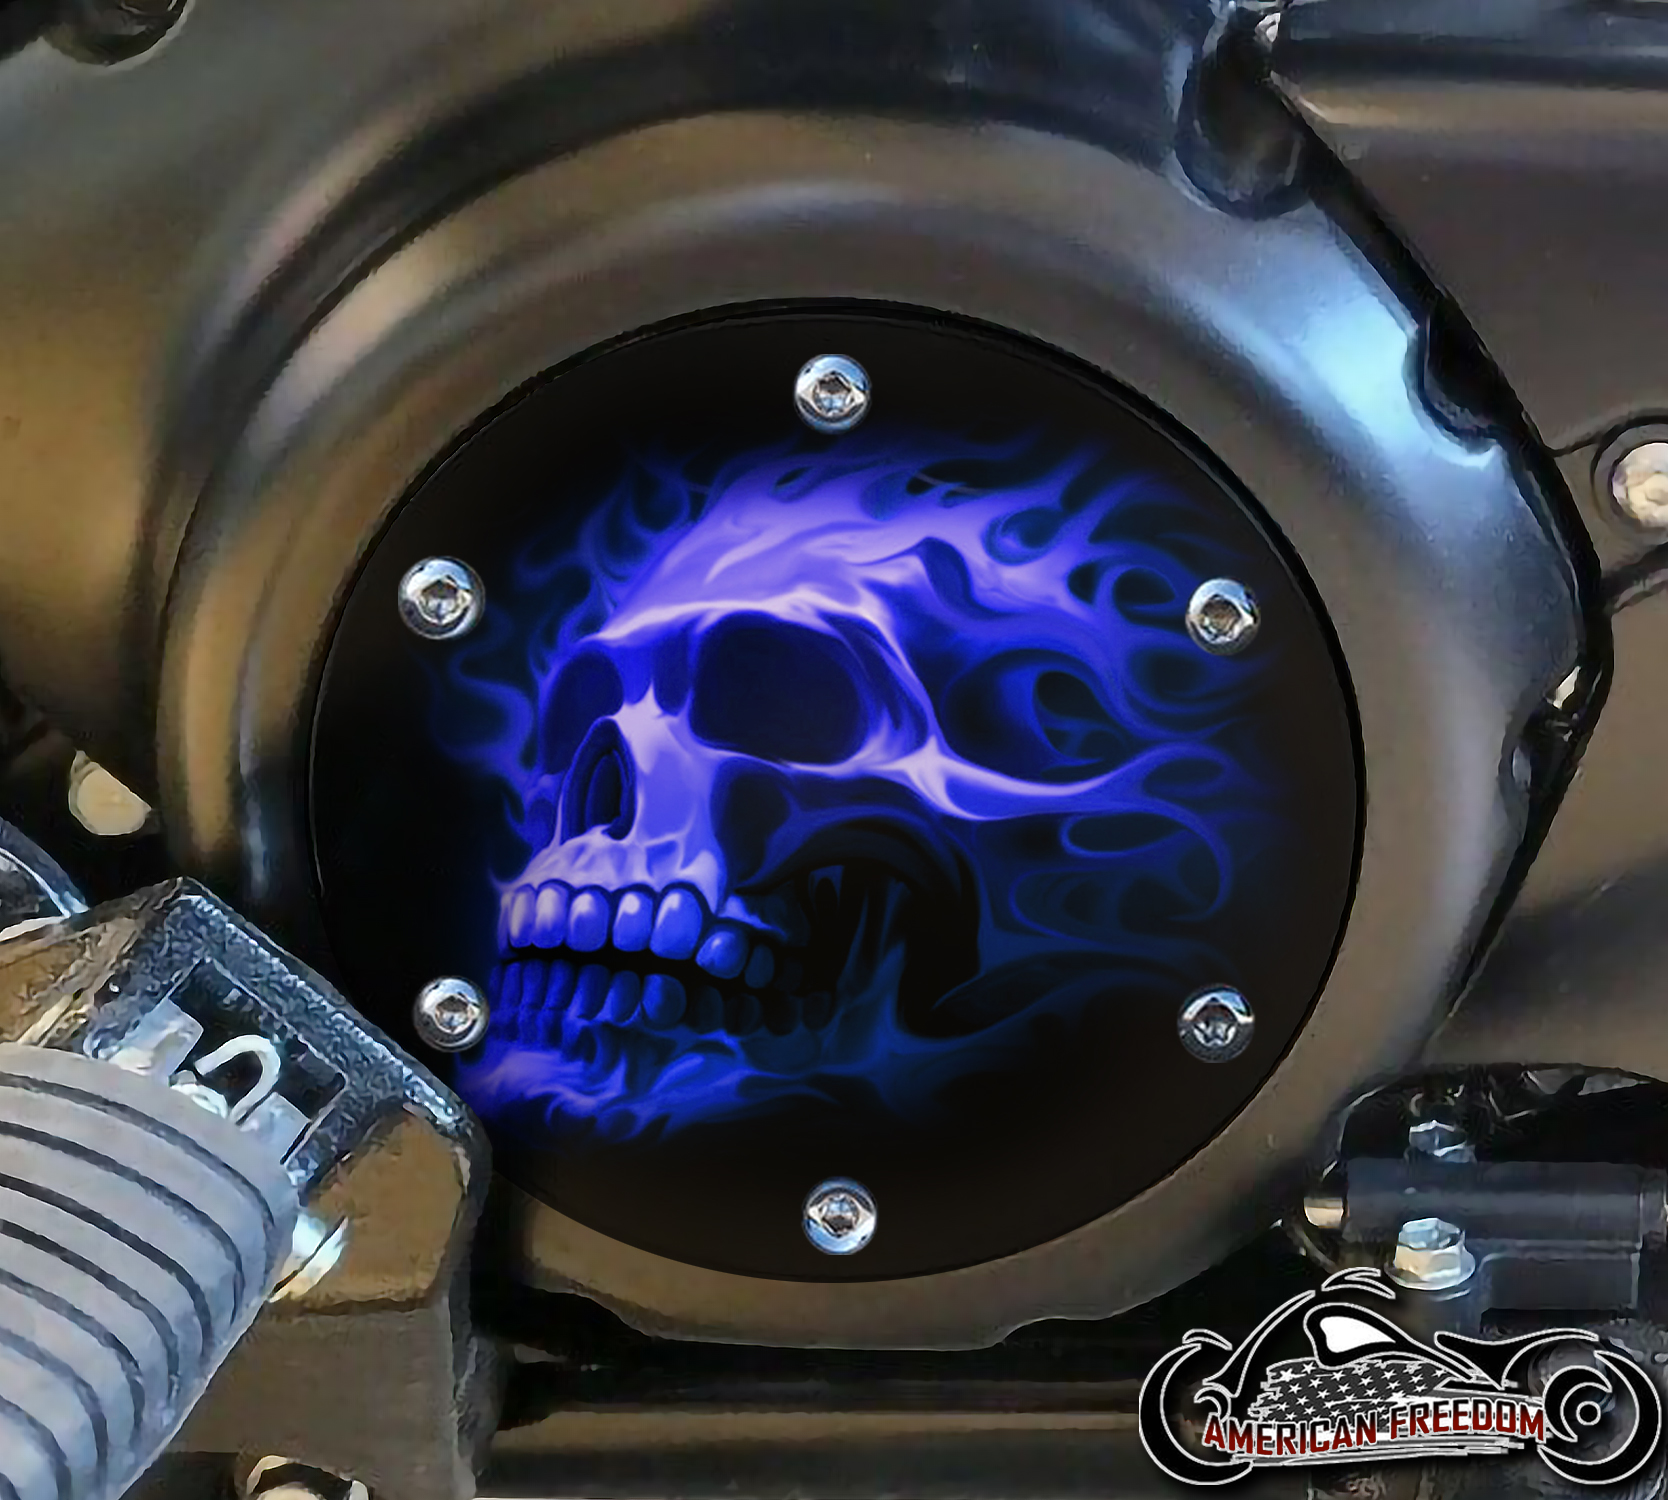 SUZUKI M109R Derby/Engine Cover - Blue Fire Skull